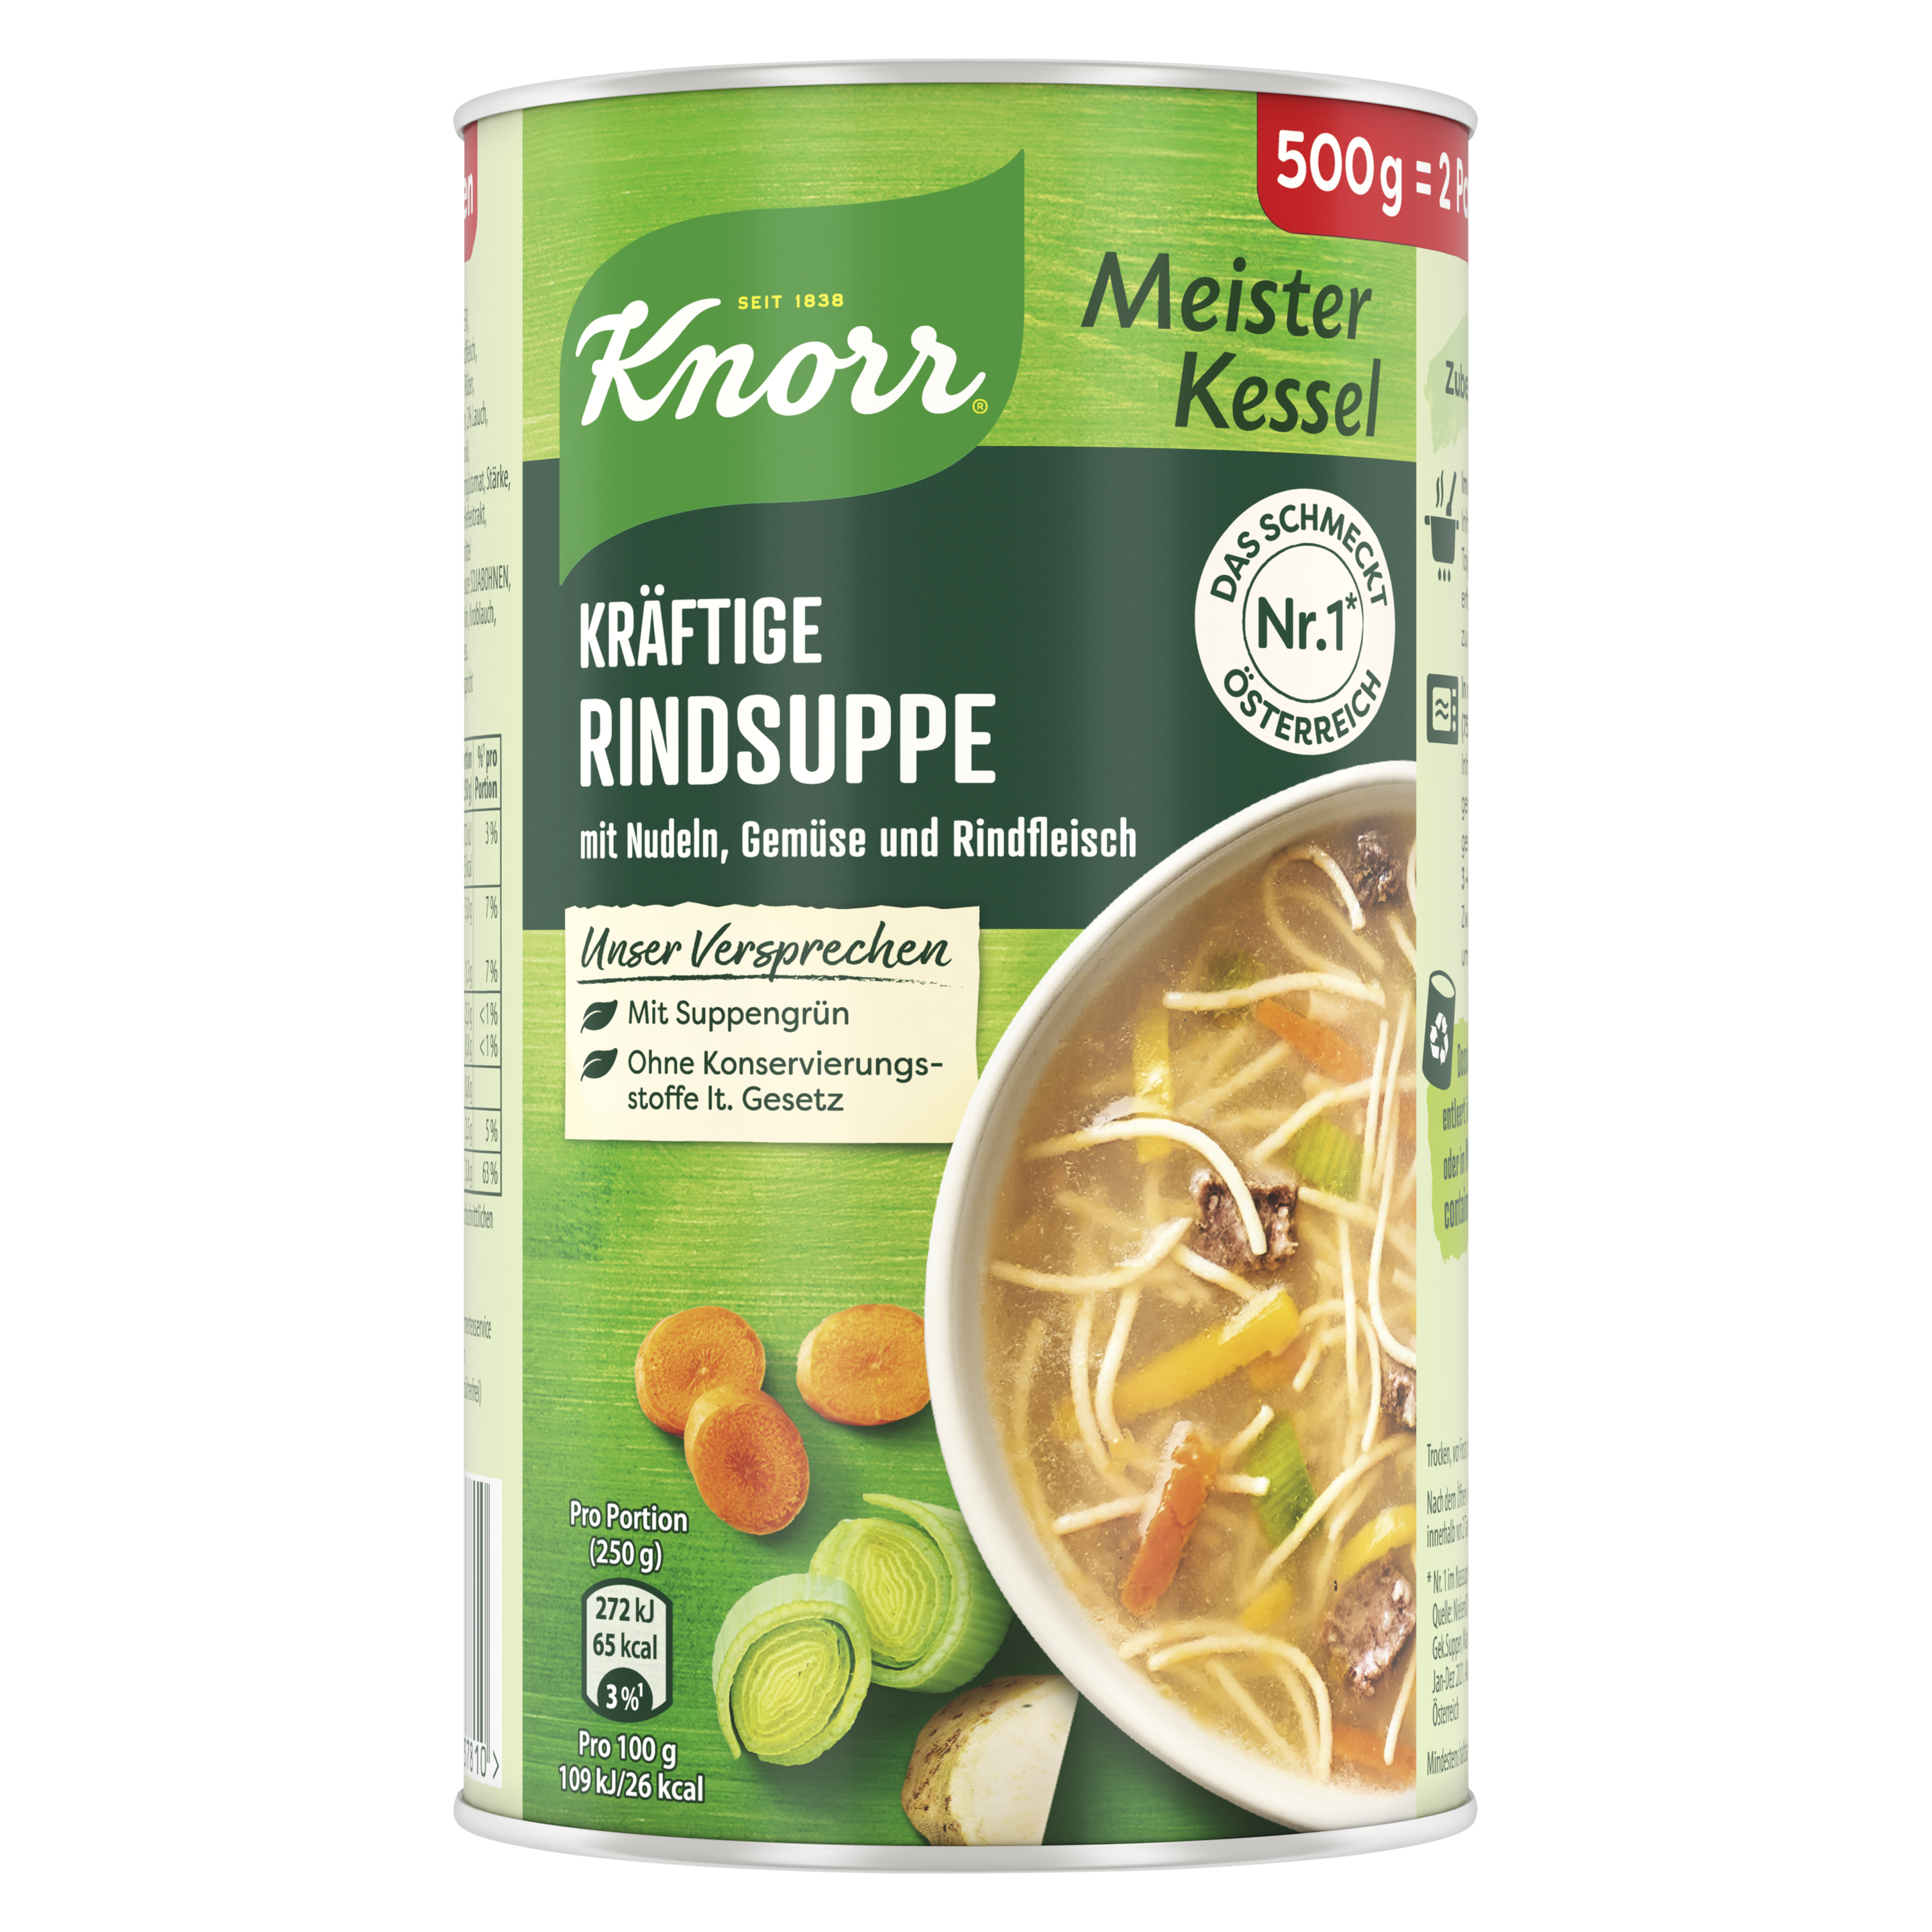 Knorr Meisterkessel Kräftige Rind Suppe 2 Teller